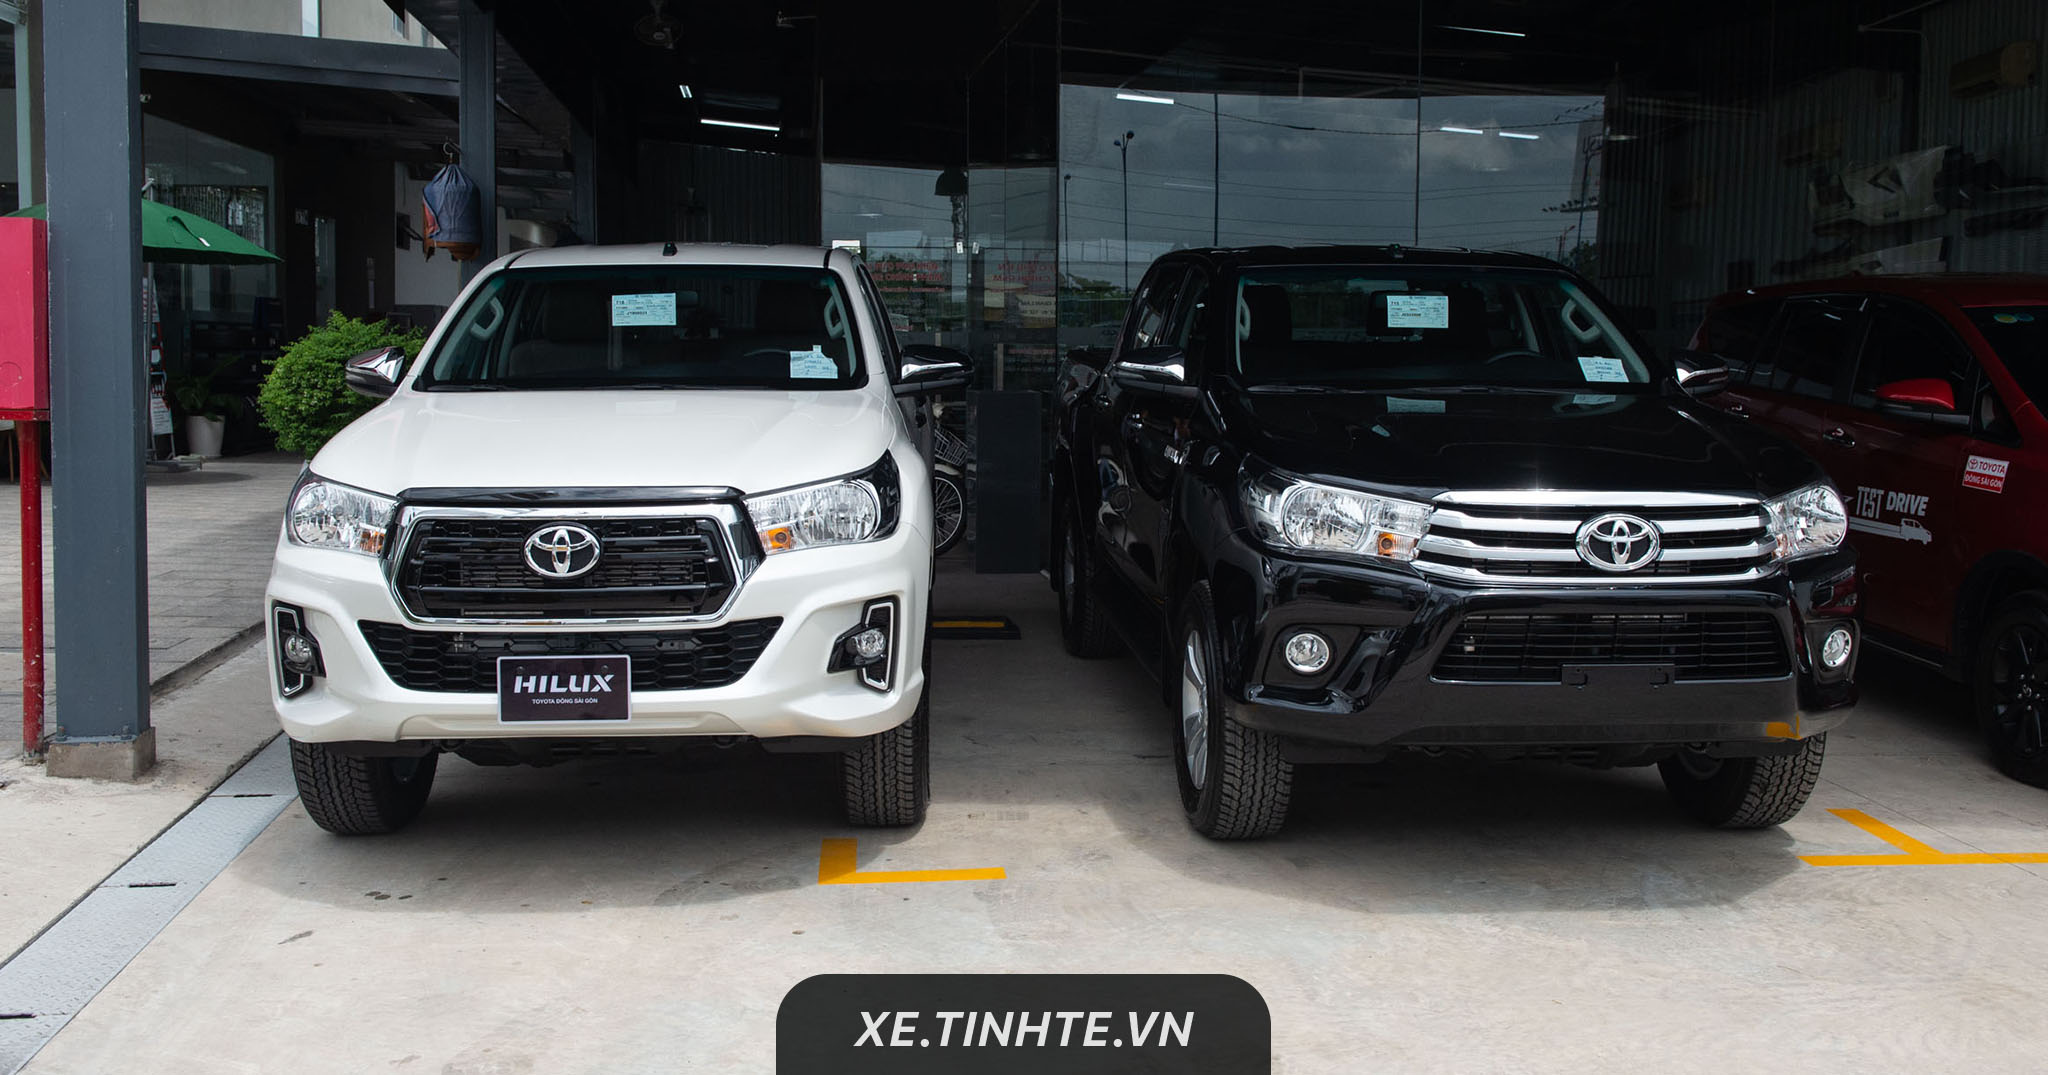 Chi tiết Toyota Hilux 2018 bản 2.4 E - có 7 túi khí, VSC, Cruise Control, giá 695 triệu đồng